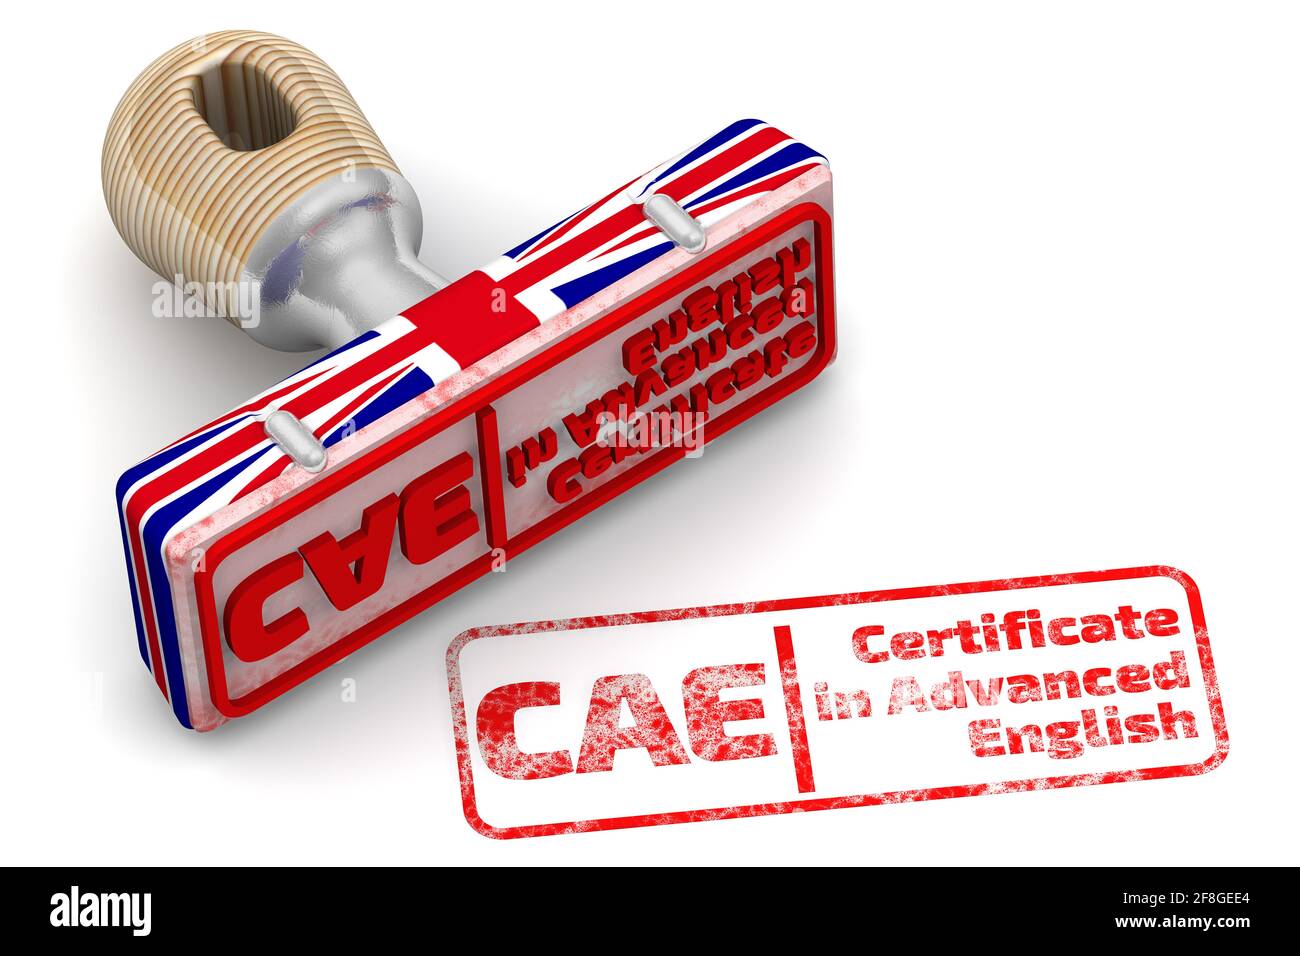 CAE. Certificado en inglés avanzado. Sello de goma en colores de la bandera del Reino Unido e impresión roja CAE. Certificado en inglés avanzado sobre superficie blanca. Foto de stock